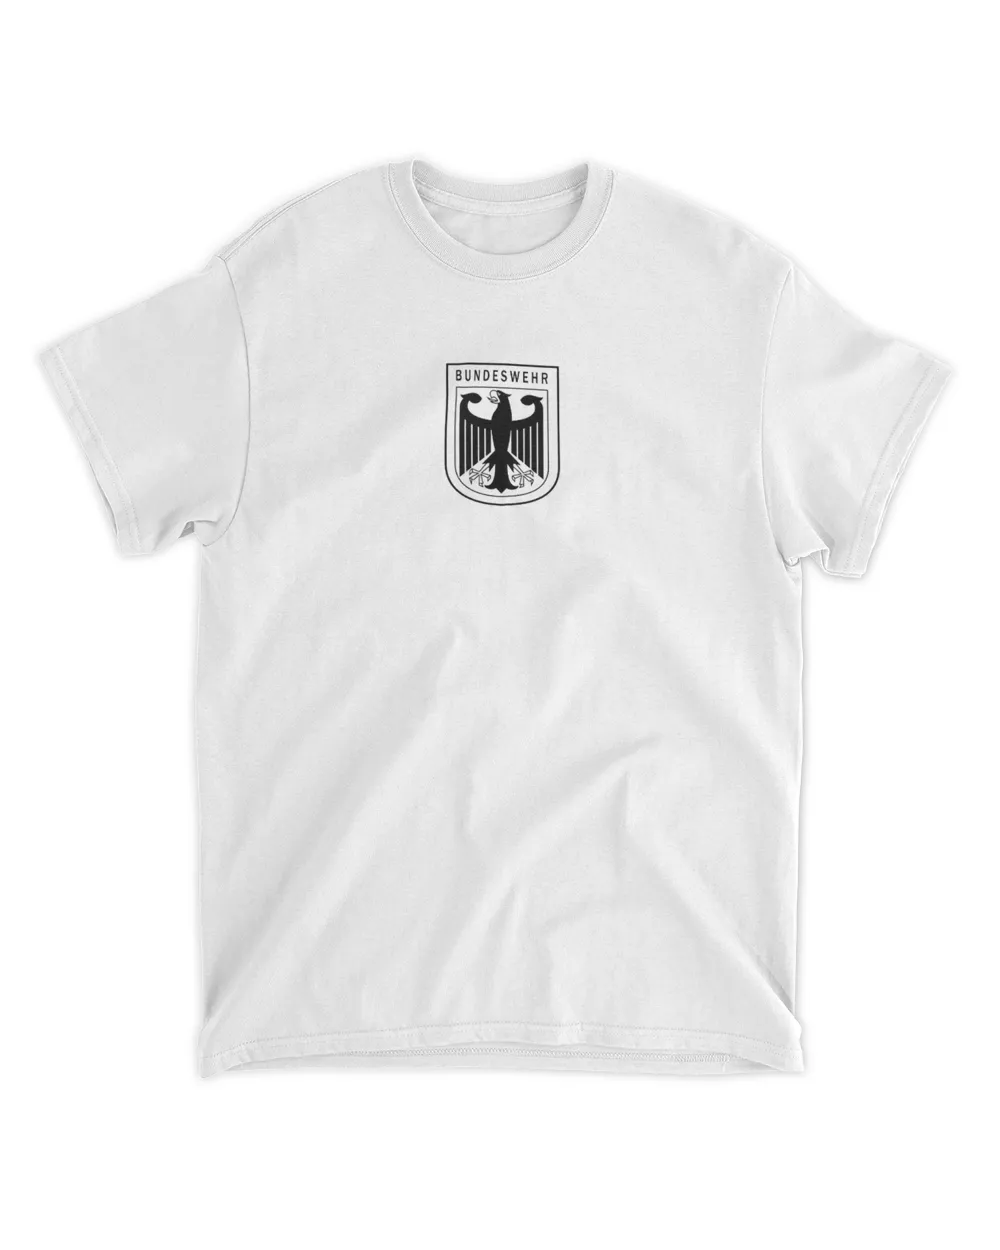 Kanye West Wearing Bundesadler Germany Eagle T Shirt | SenPrints